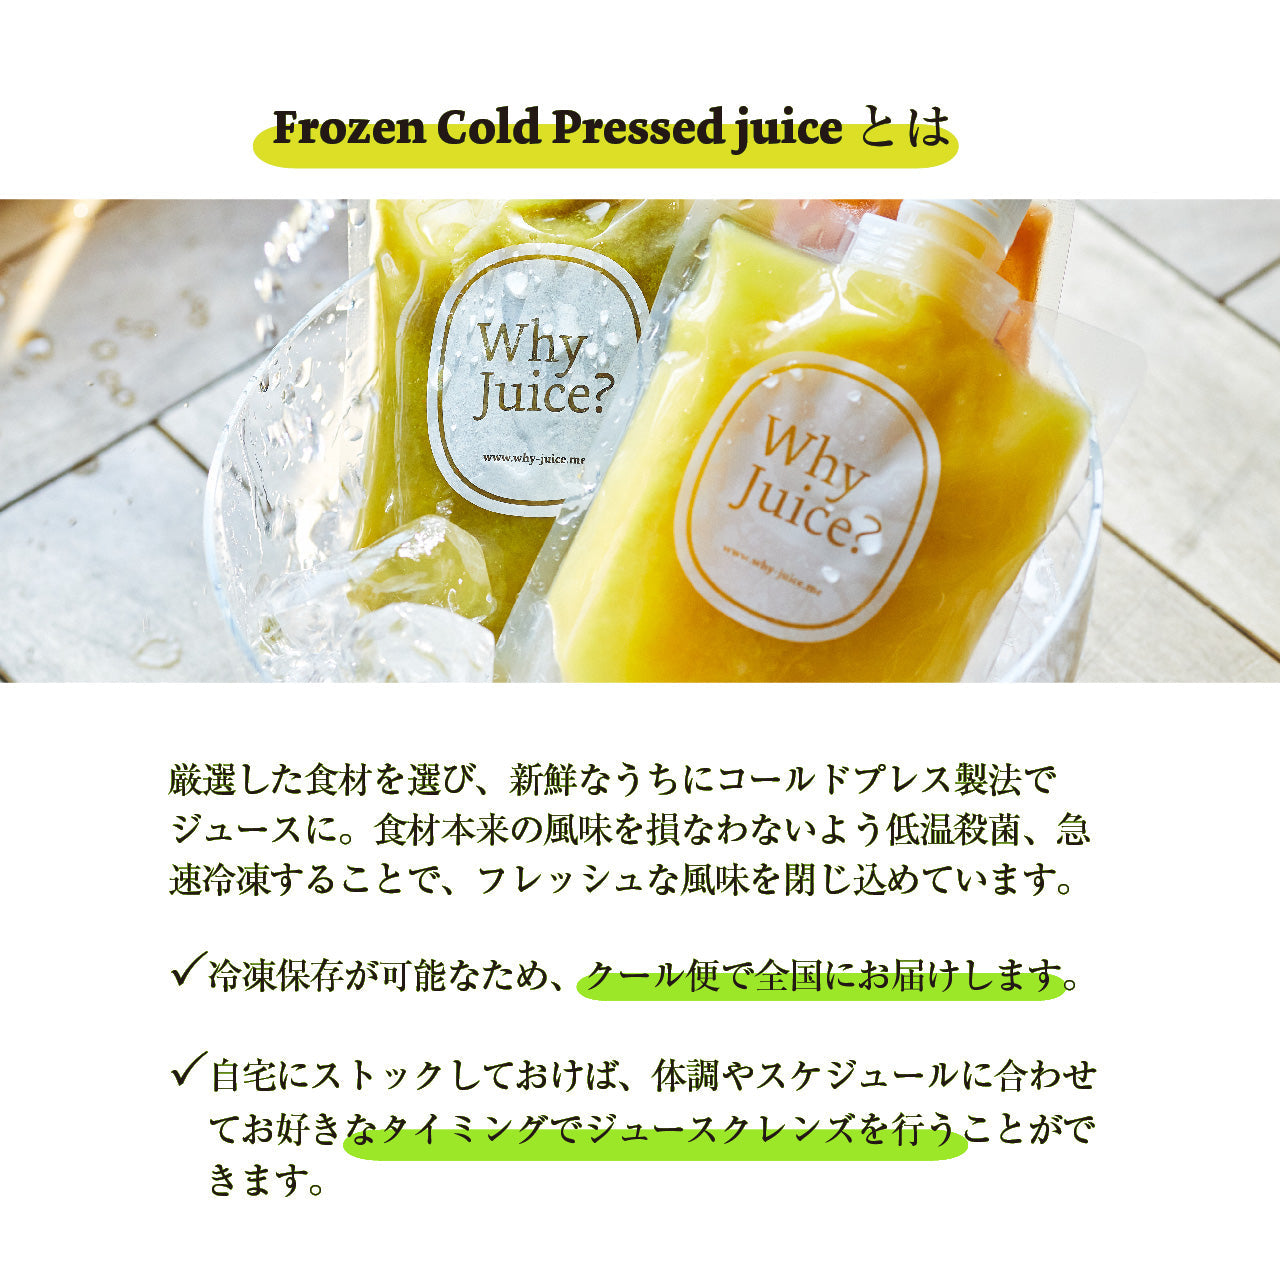 【初めてのWhy Juice?お試し】Frozen Cold Pressed Juice3本セット